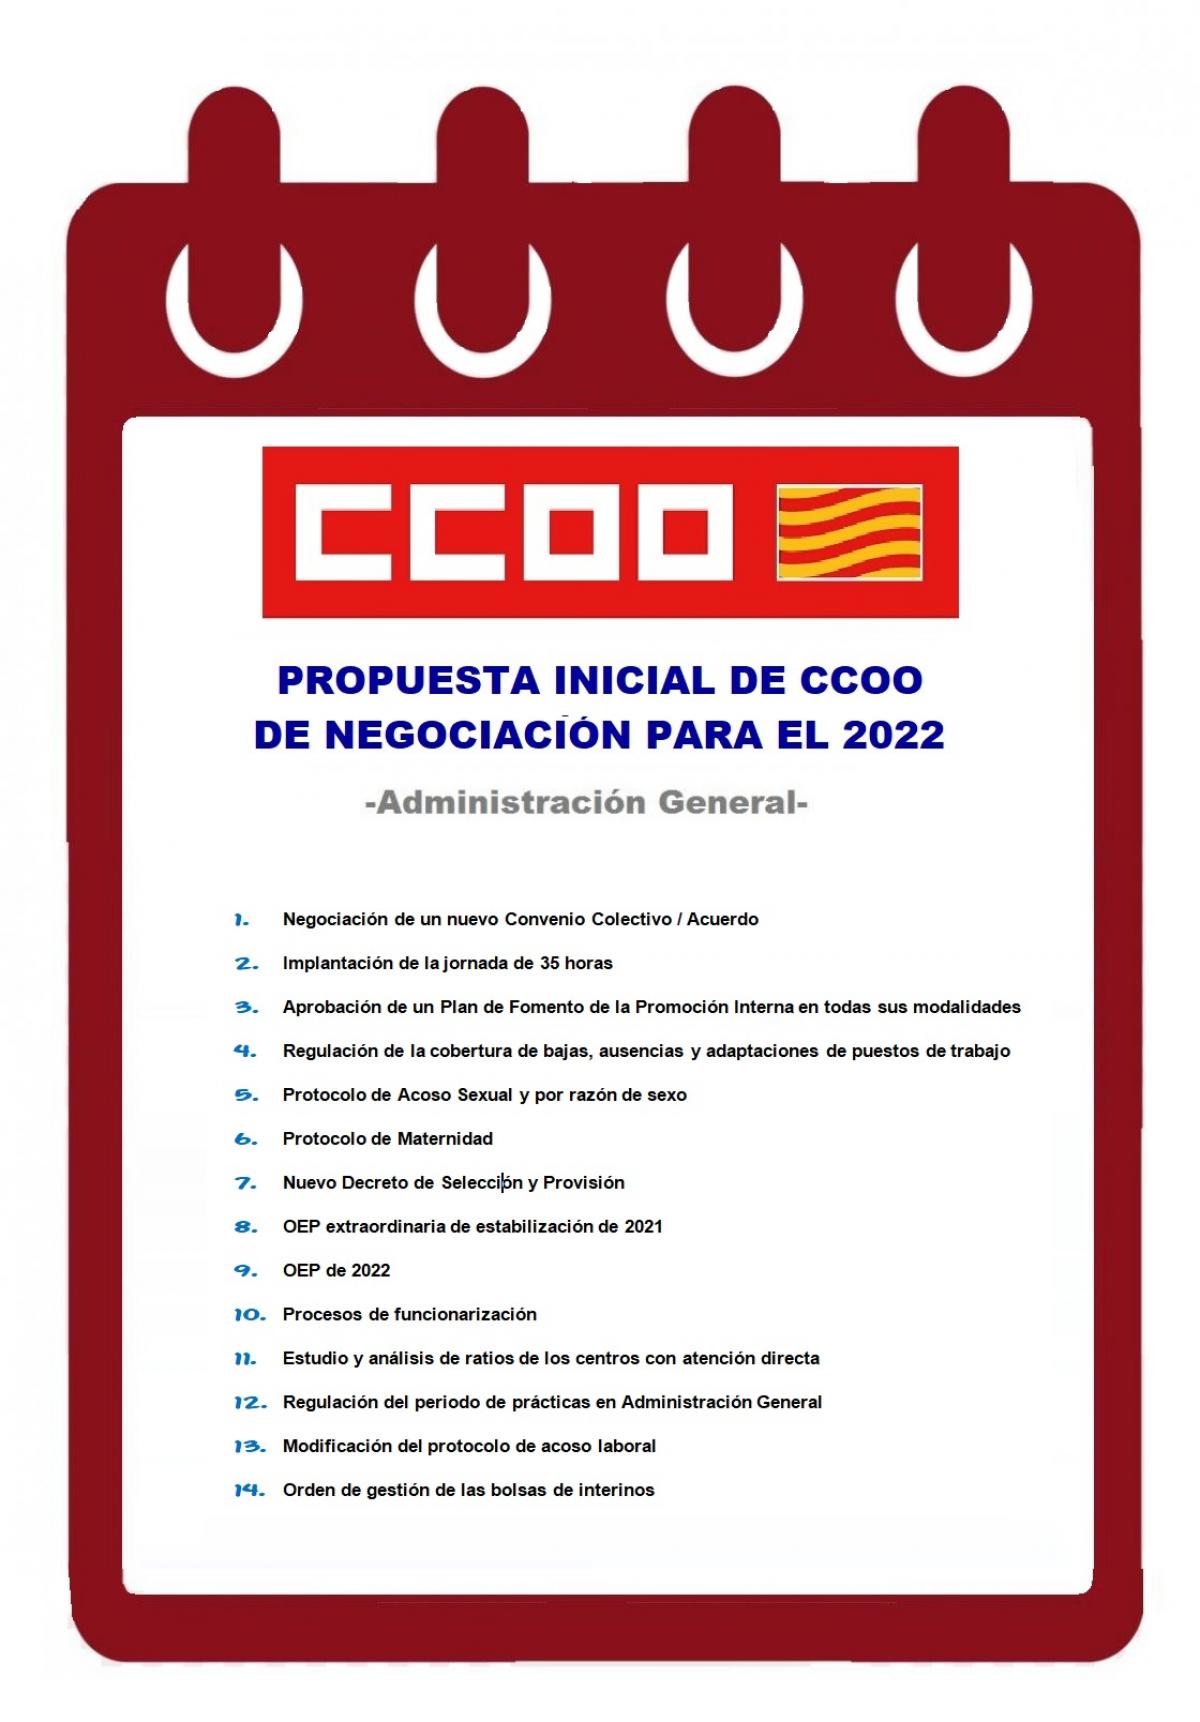 Propuesta de CCOO de Calendario de negociación para el año 2022.